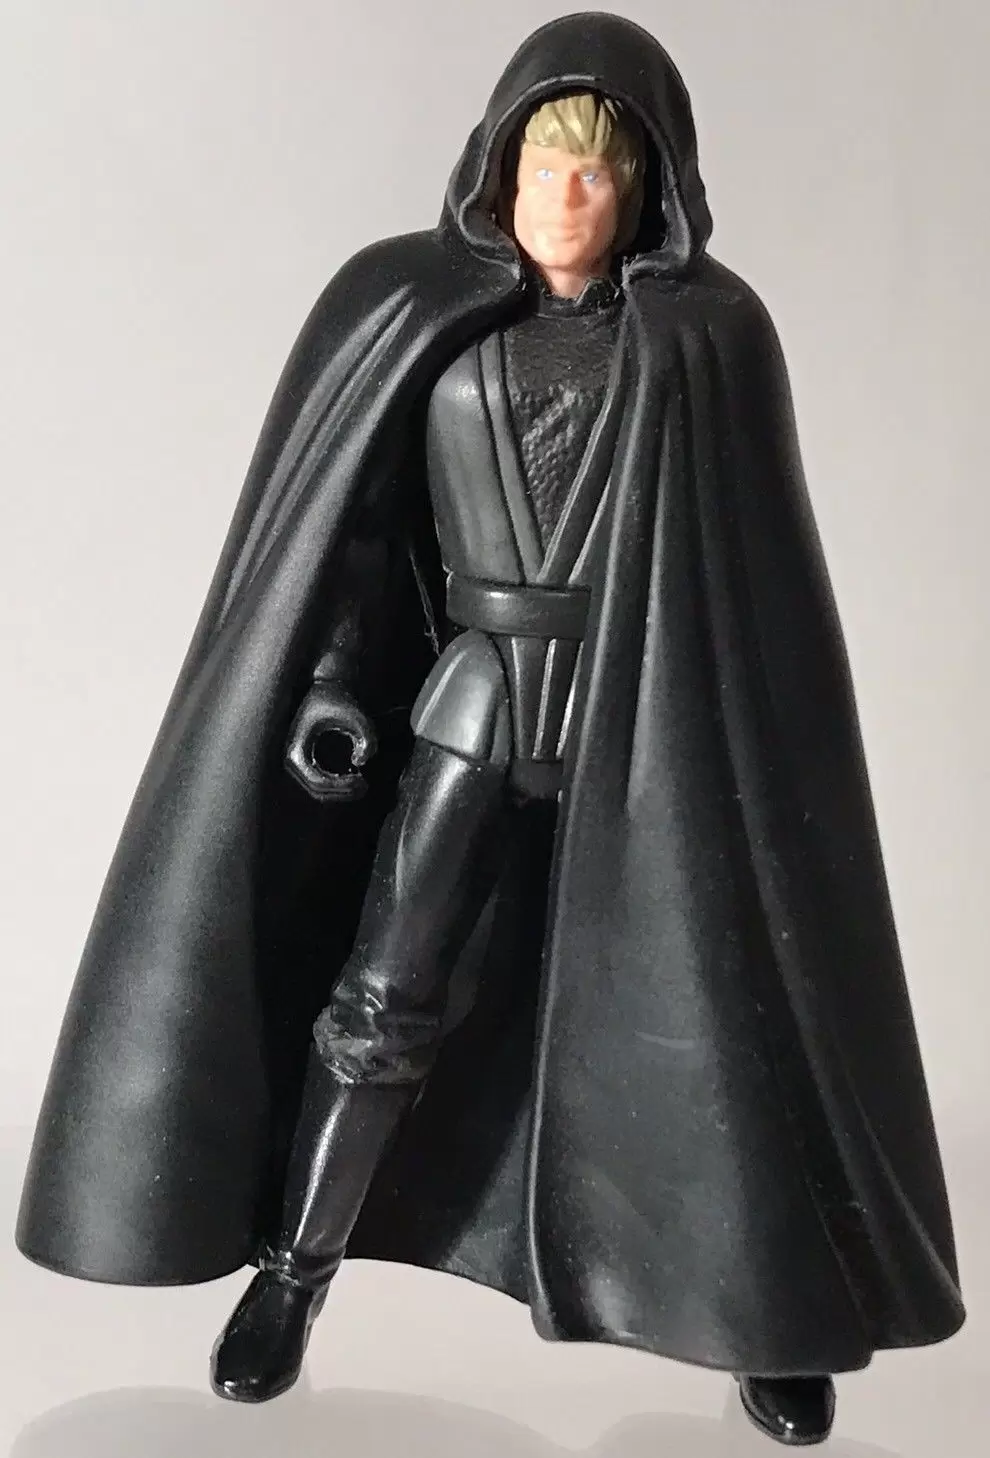 Power of the Force 2 - Luke Skywalker Jedi Knight (black vest)